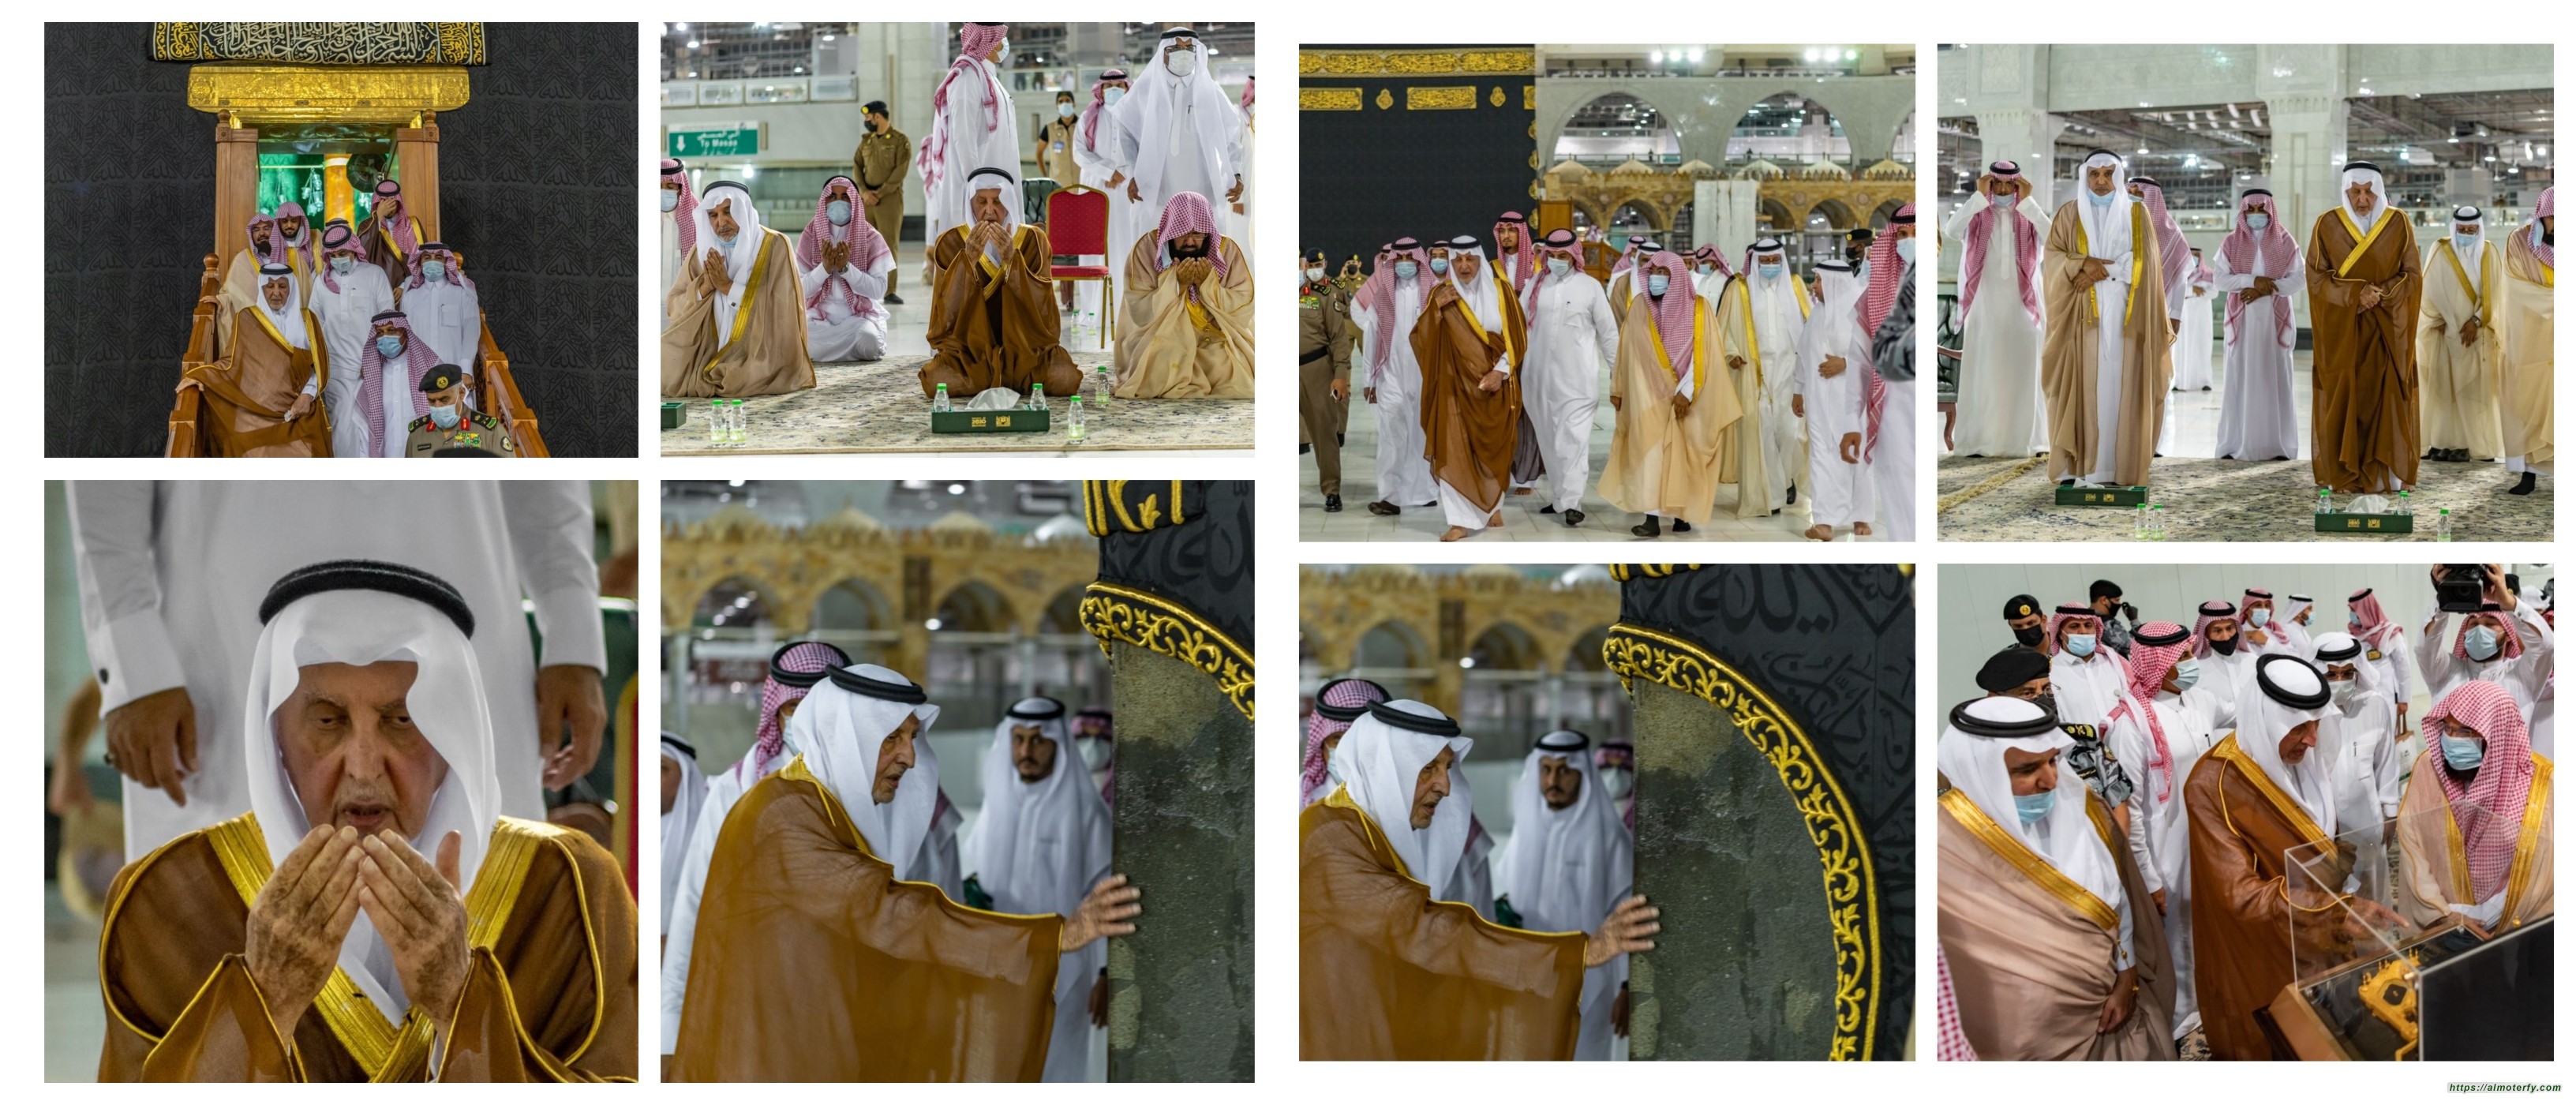 نيابة عن خادم الحرمين الشريفين أمير منطقة مكة المكرمة يتشرف بغسل الكعبة المشرفة وسط إجراءات احترازية مشددة